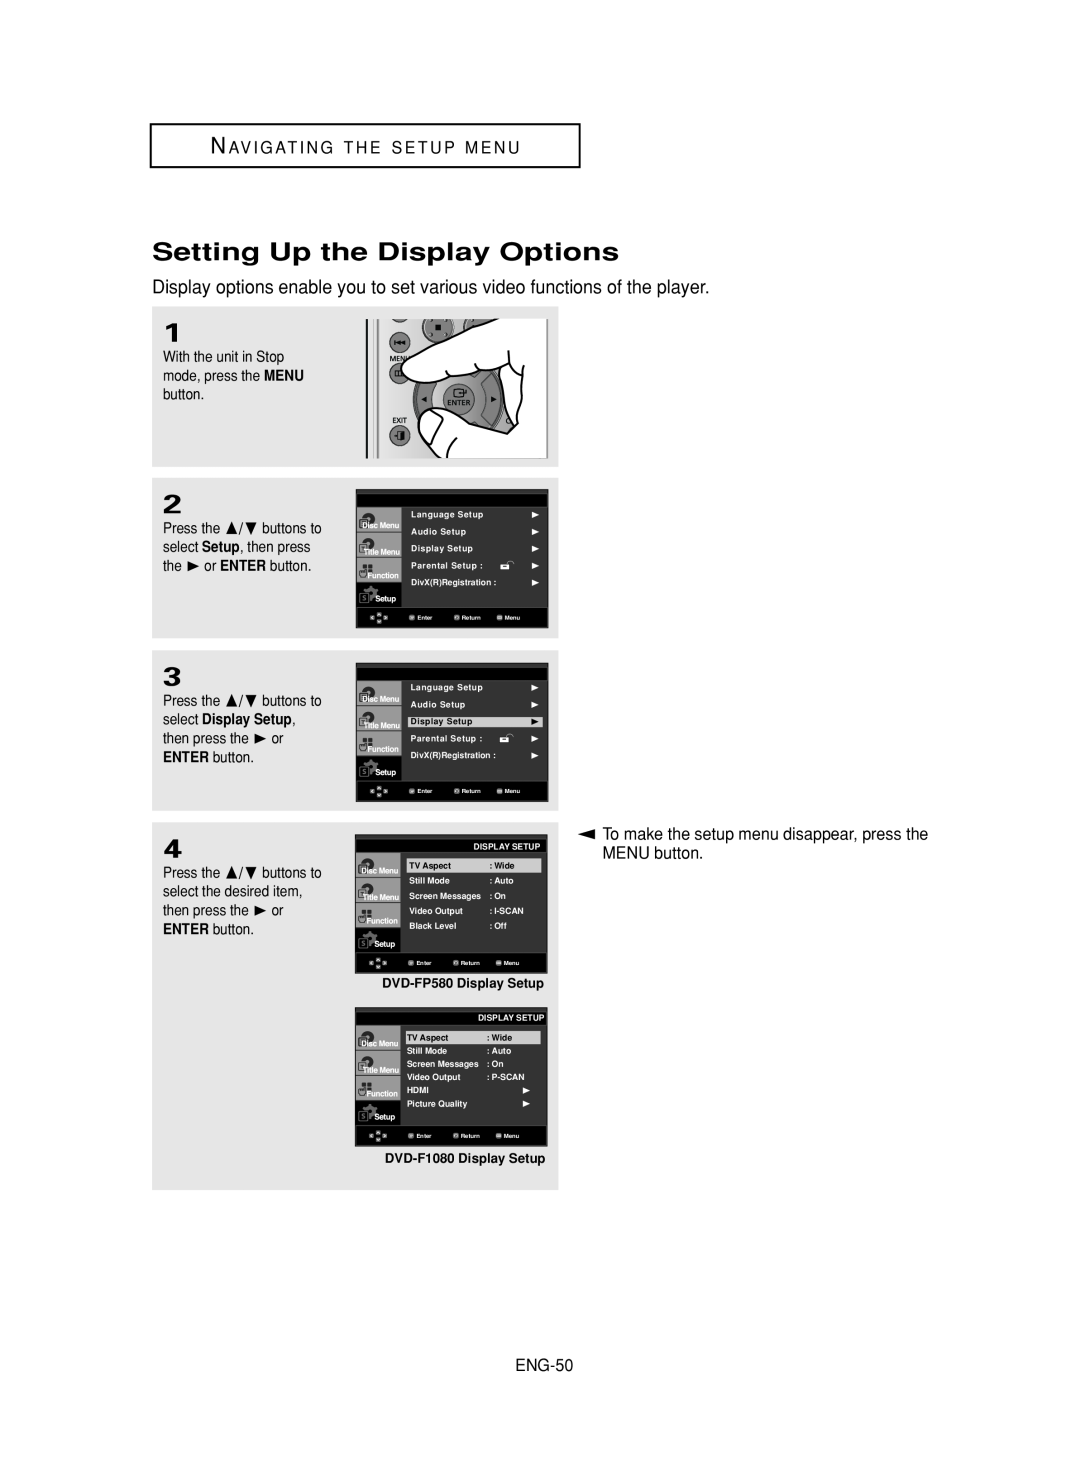 Samsung DVD-FP580, DVD-F1080 manual Setting Up the Display Options, Nav I G At I N G T H E S E T U P M E N U, ENG-50 